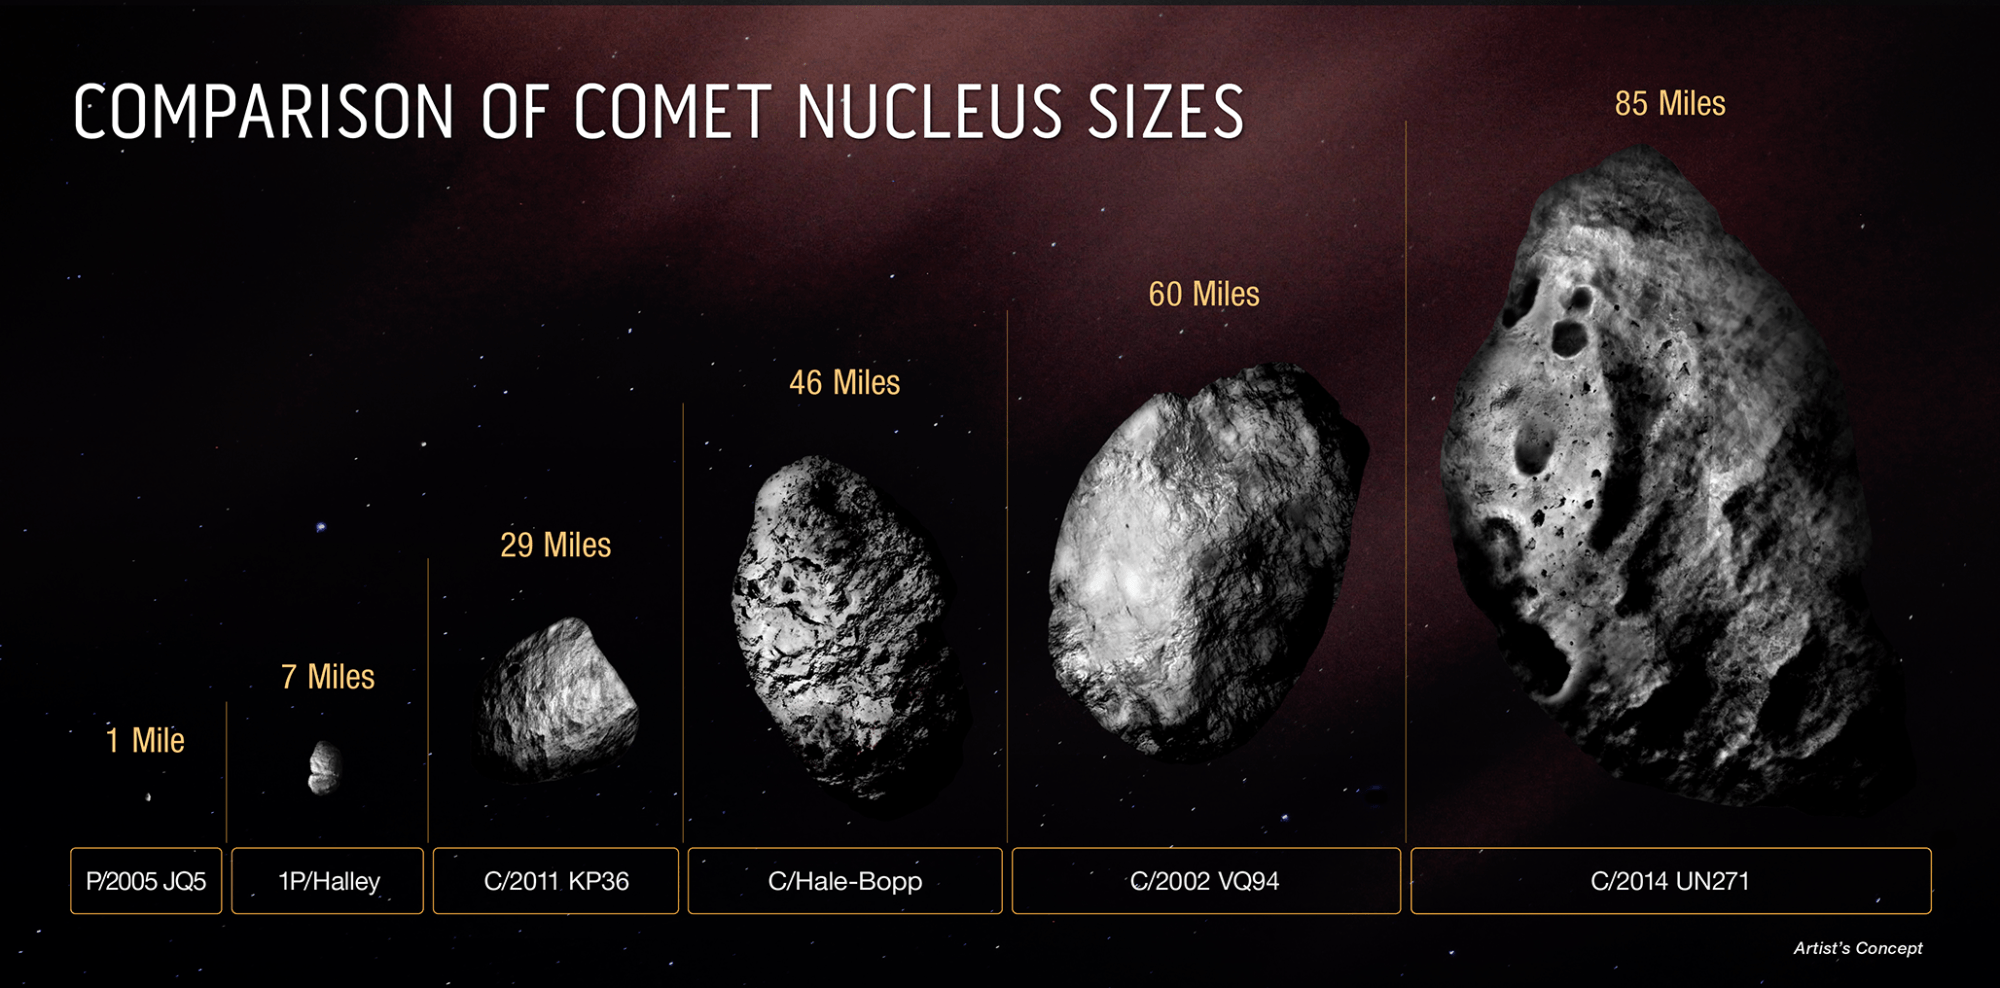 a comparison of 6 comet nuclei